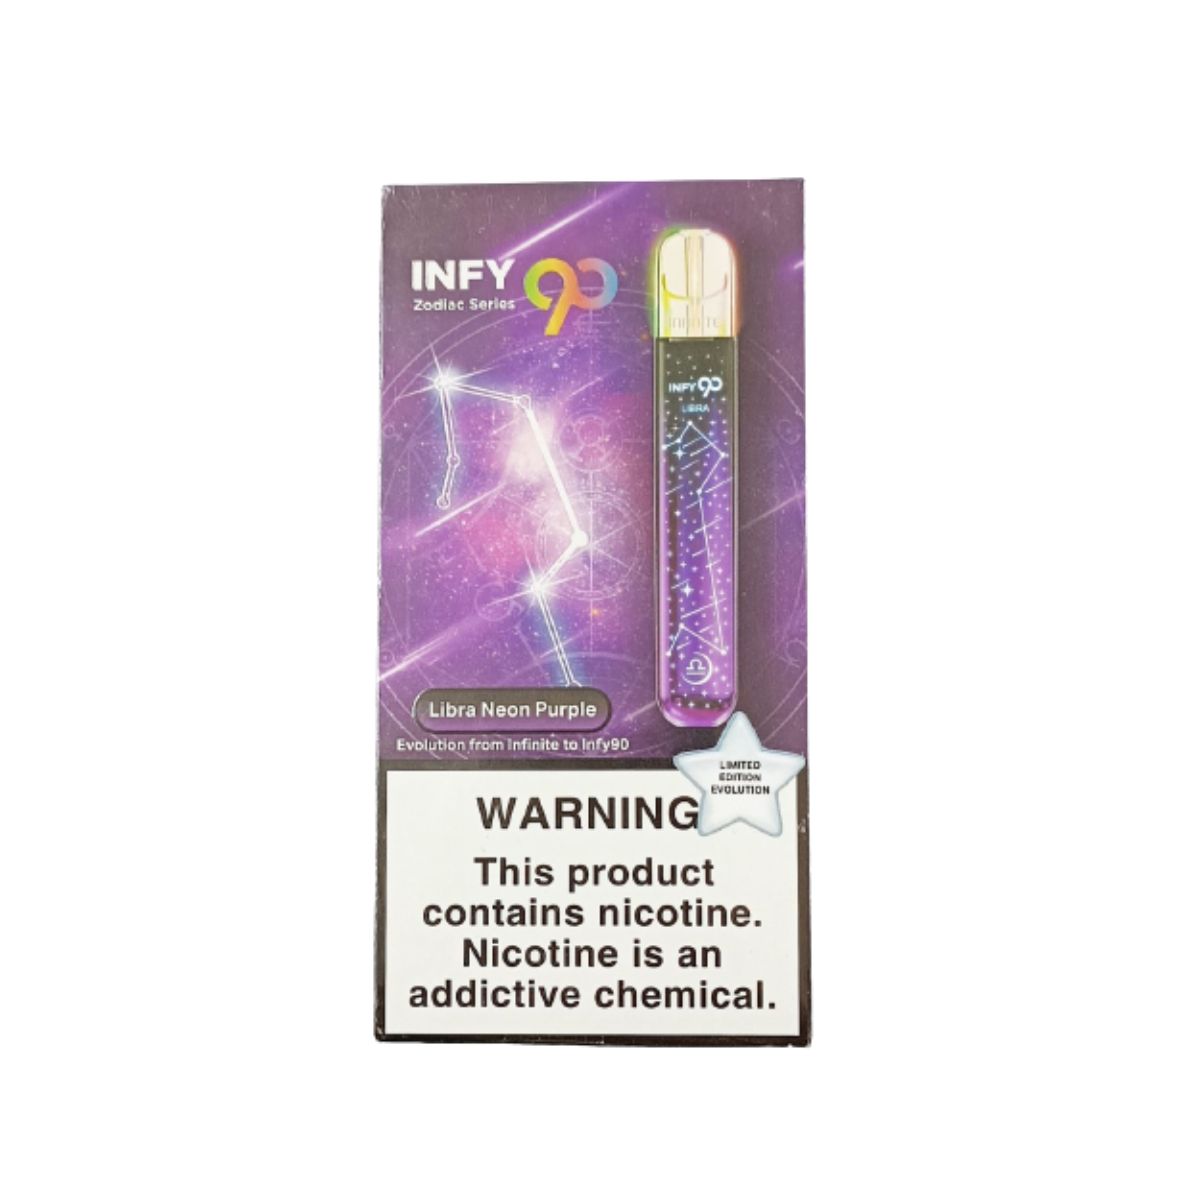 Infy90 Zodiac Series Vape Device - Libra Neon Purple